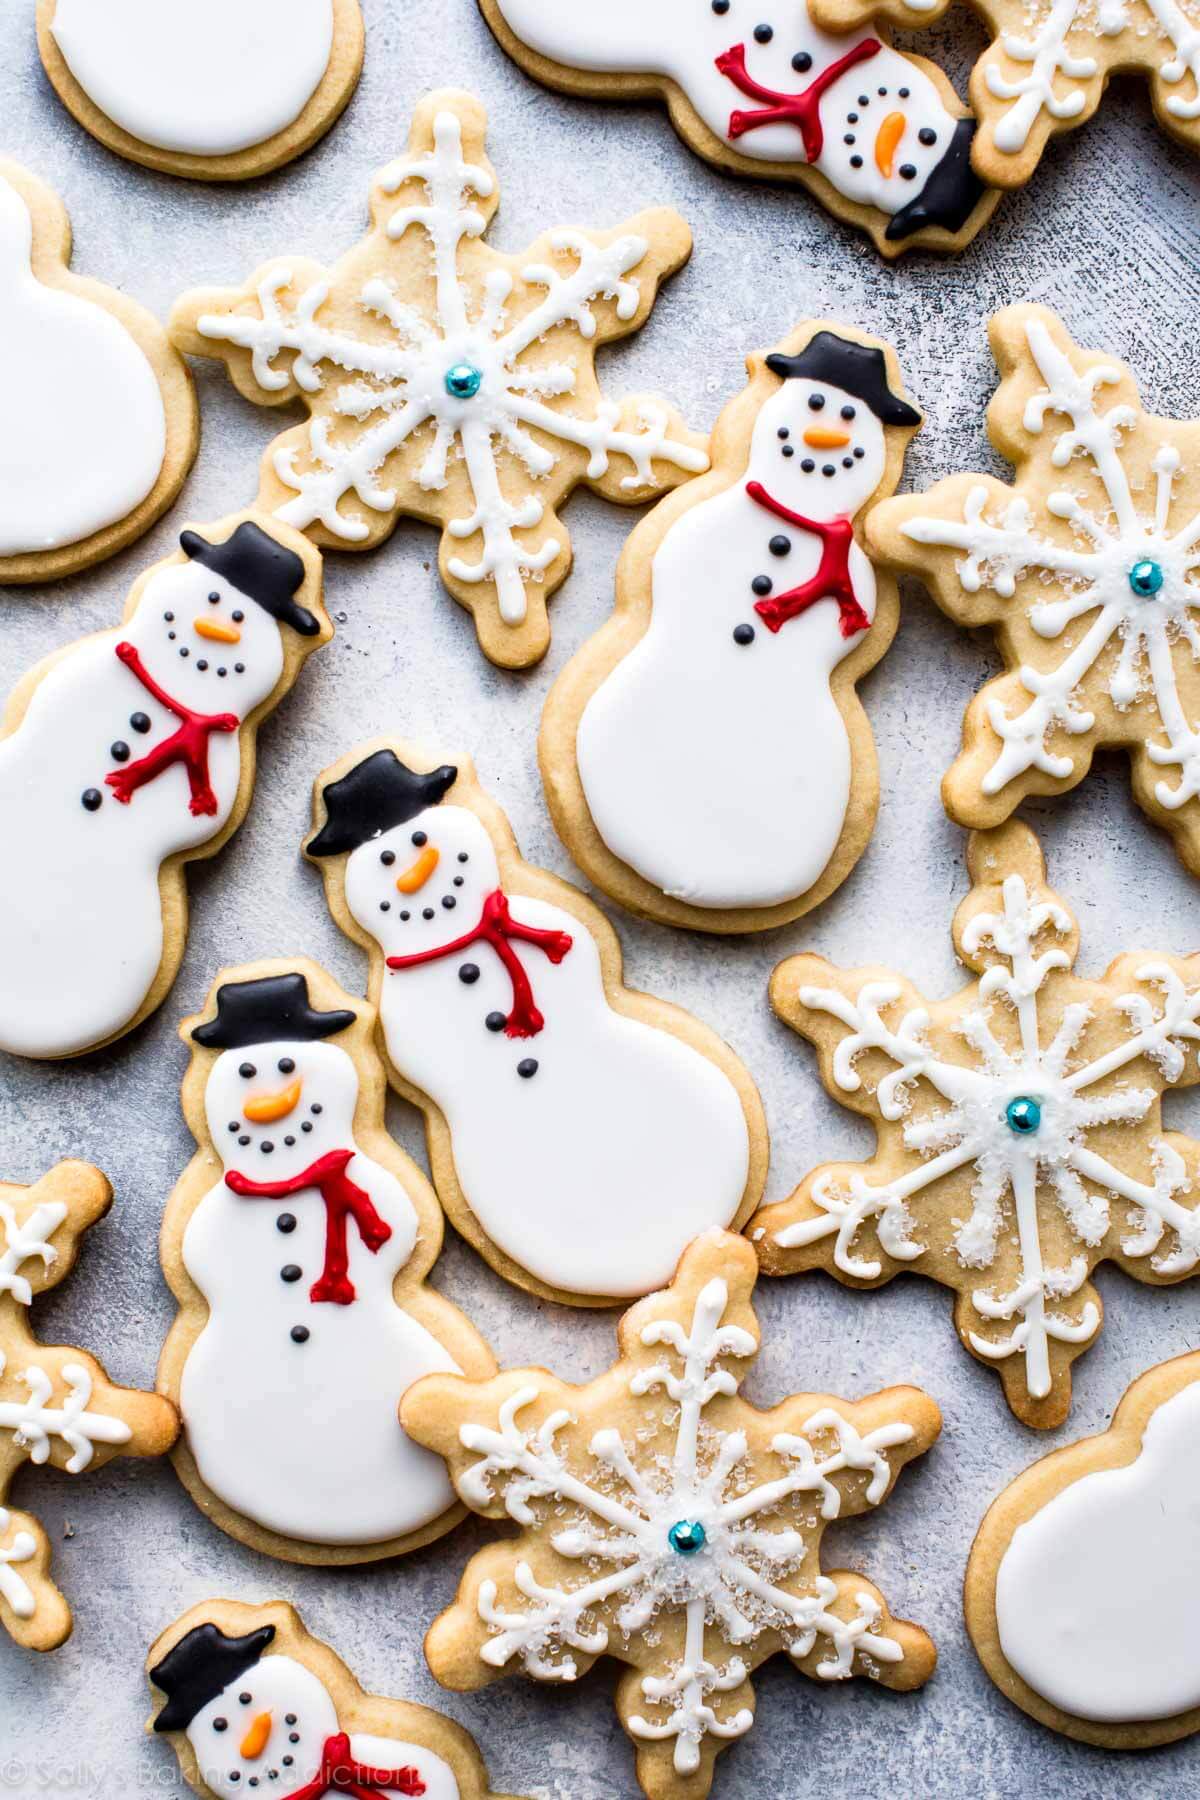 Apprenez à faire d'adorables biscuits au sucre bonhomme de neige et flocons de neige avec du glaçage royal! Recette de biscuits de Noël sur sallysbakingaddiction.com